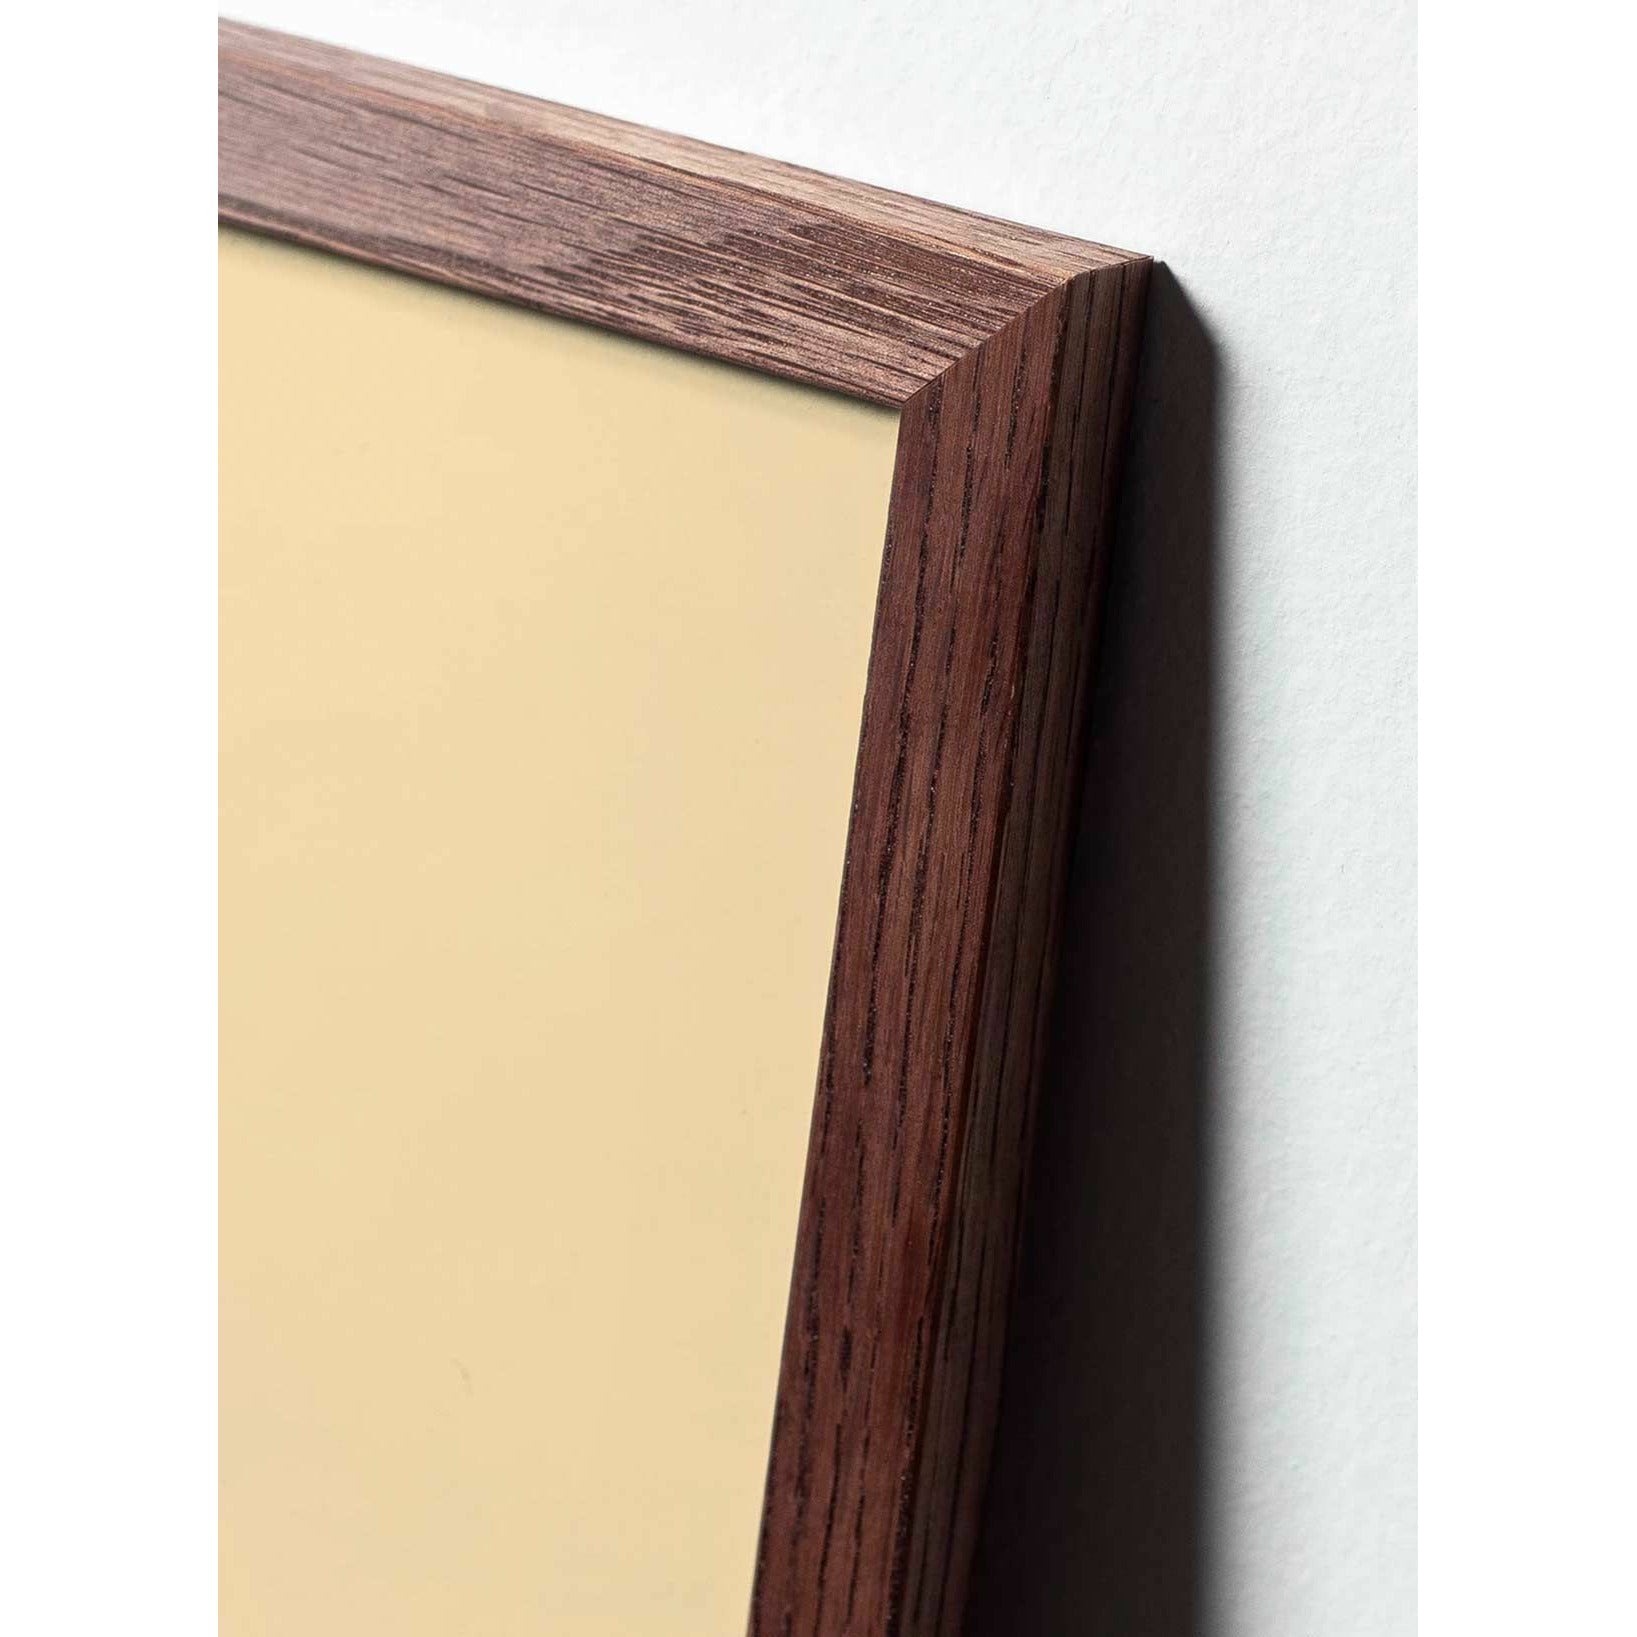 Póster de línea Swan de creación, marco de madera oscura A5, fondo blanco